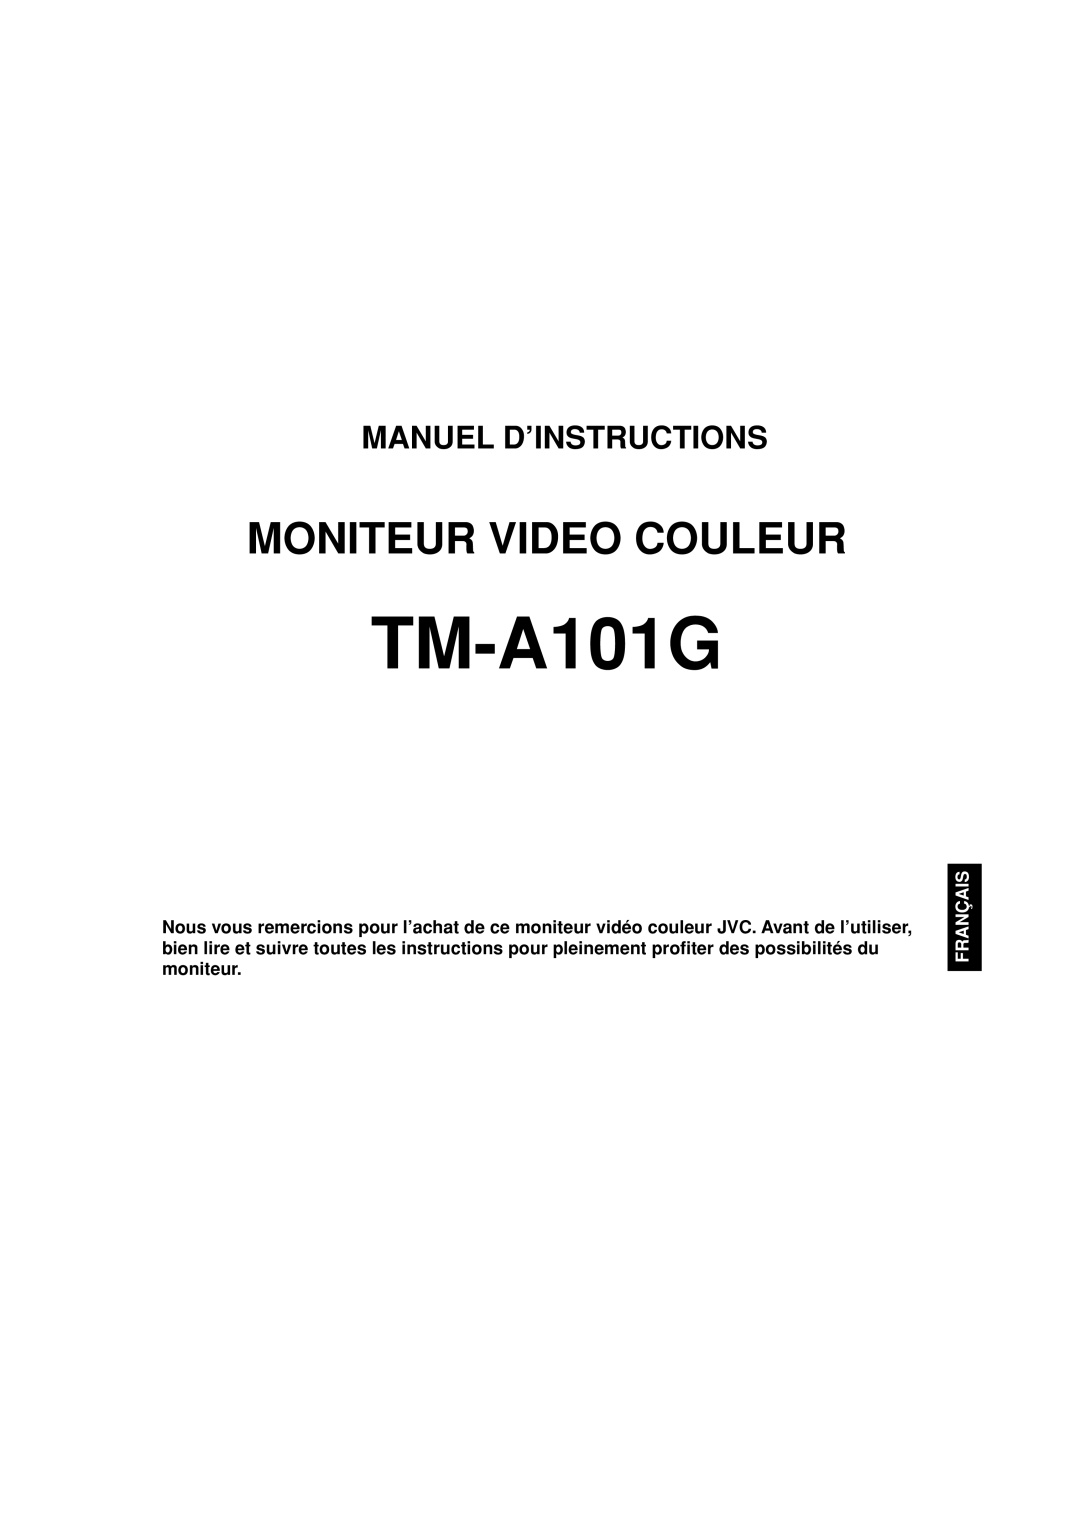 JVC TM-A101G manual Moniteur Video Couleur, Manuel D’Instructions, Français 